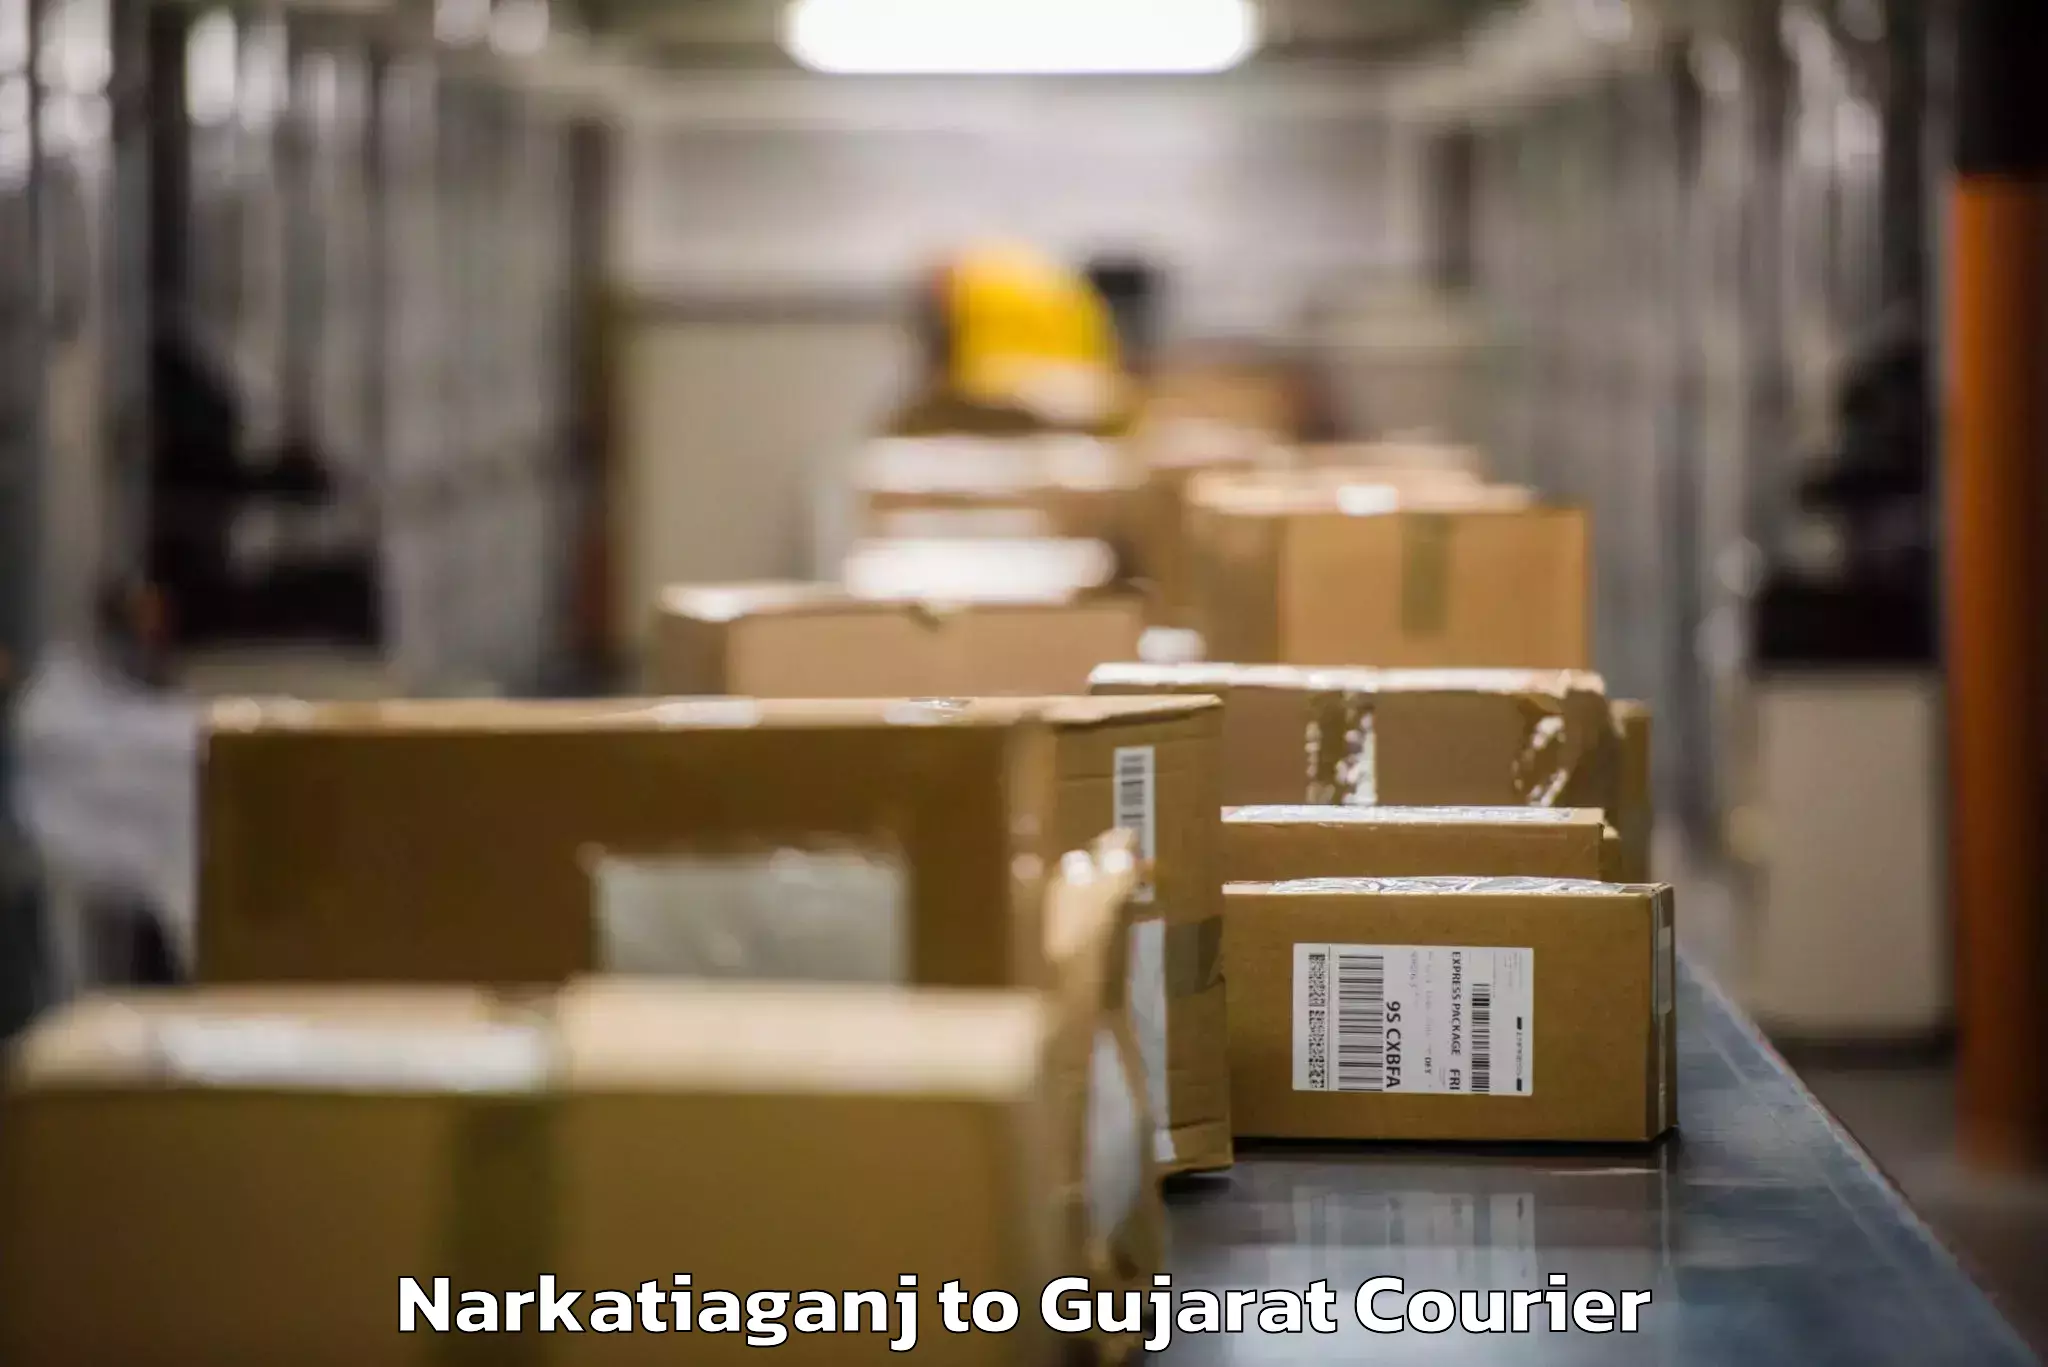 Baggage shipping service Narkatiaganj to Unjha